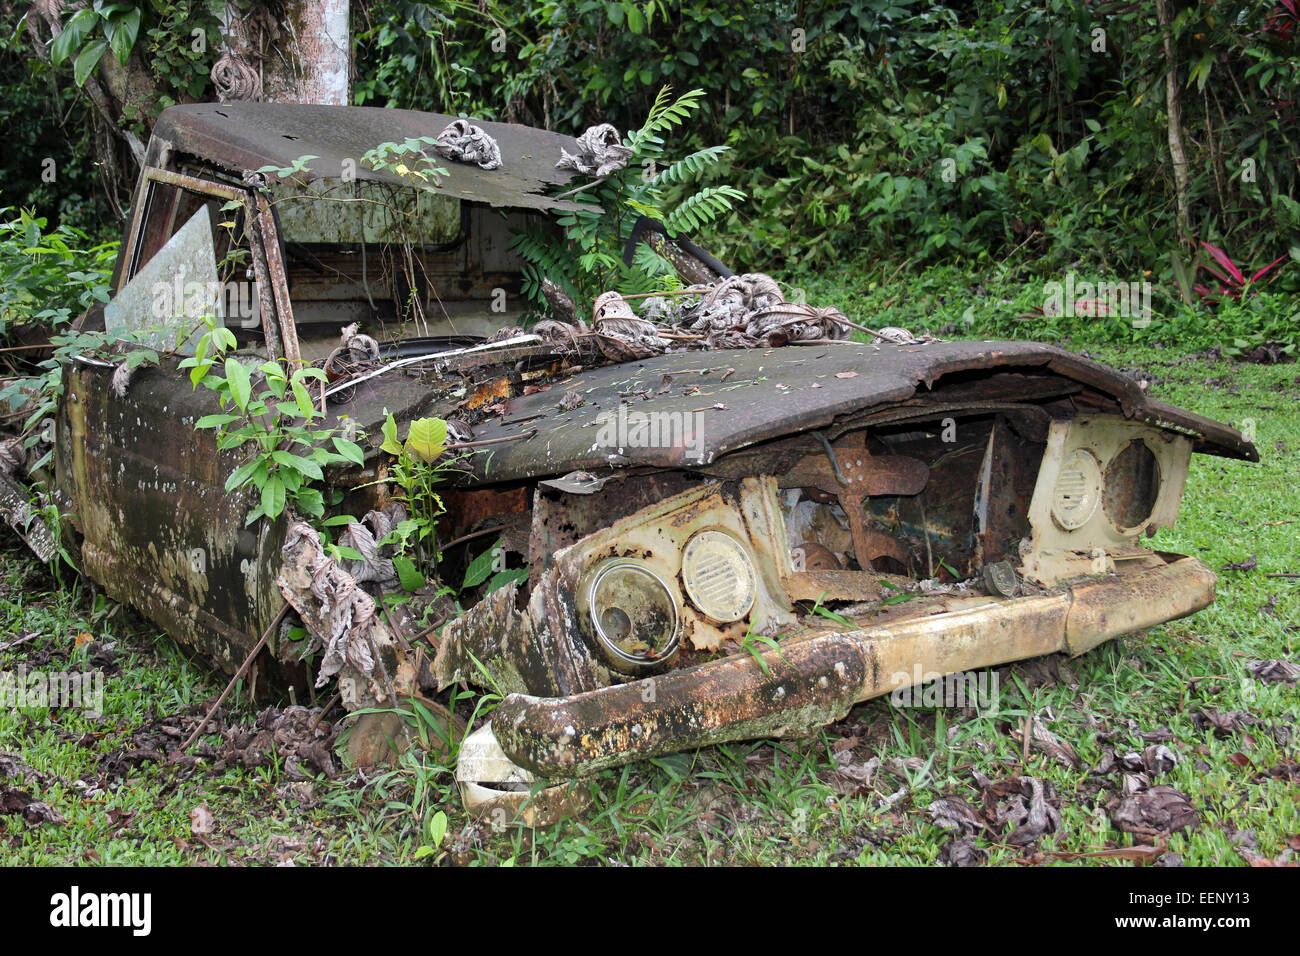 La rouille décrépit vieille camionnette Jeep J10 en cours de récupération par la nature avec les fougères et les plantes qui poussent à partir de c Banque D'Images